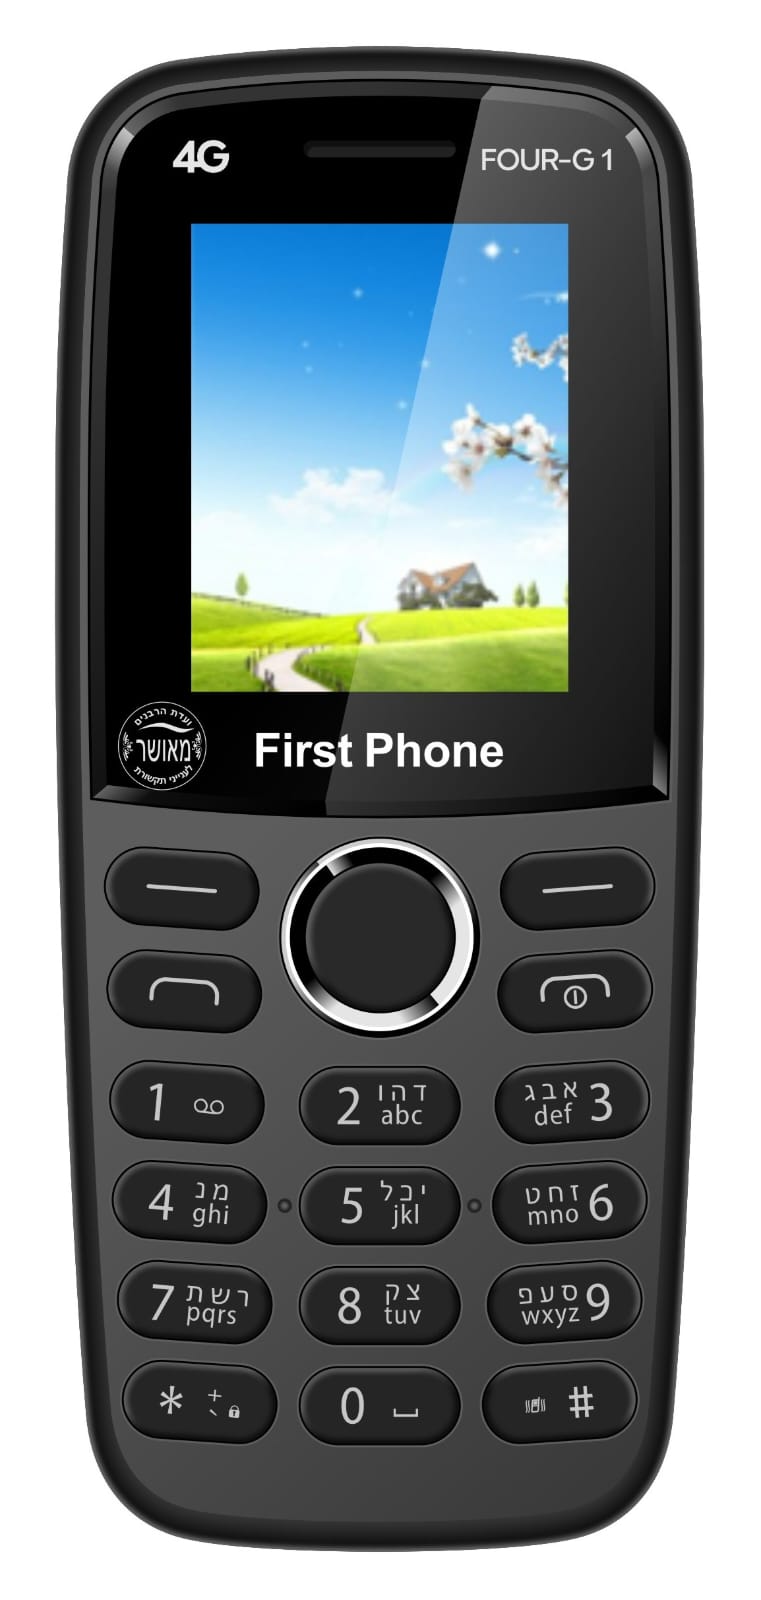 מכשיר כשר מאושר First Phone Four-g1 דור 4G 